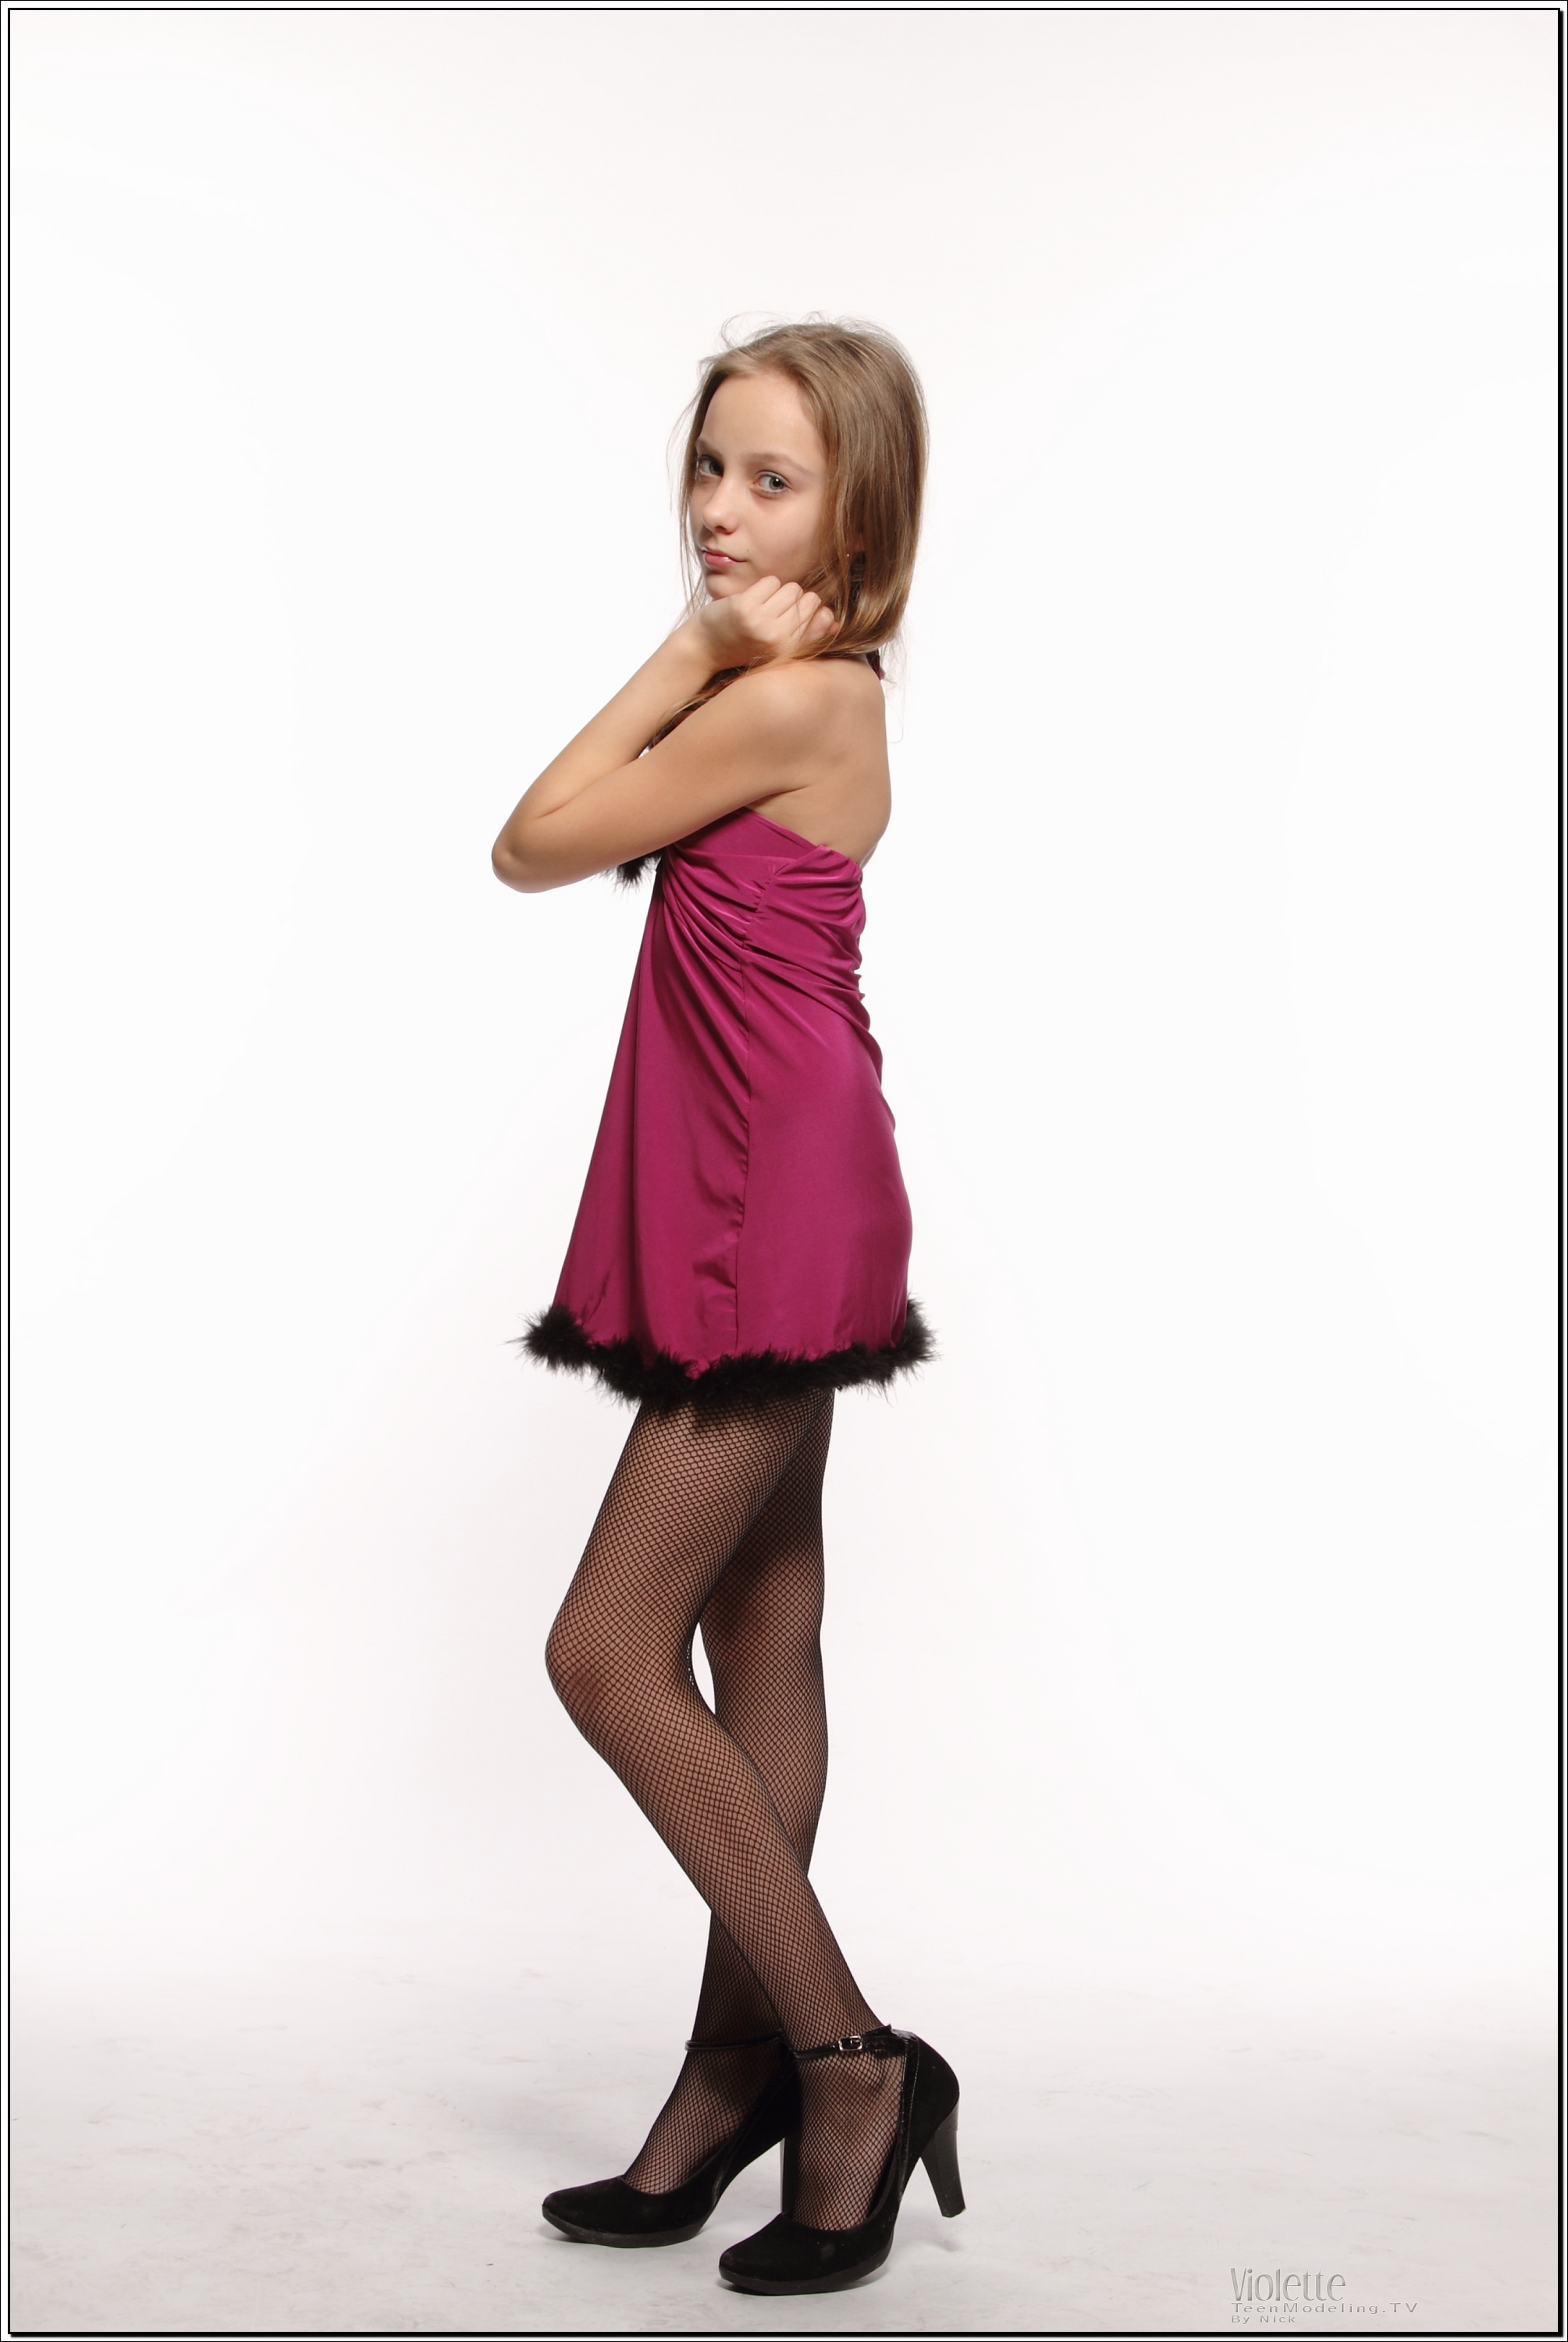 violette_model_pinkhalter_teenmodeling_tv_018.jpg